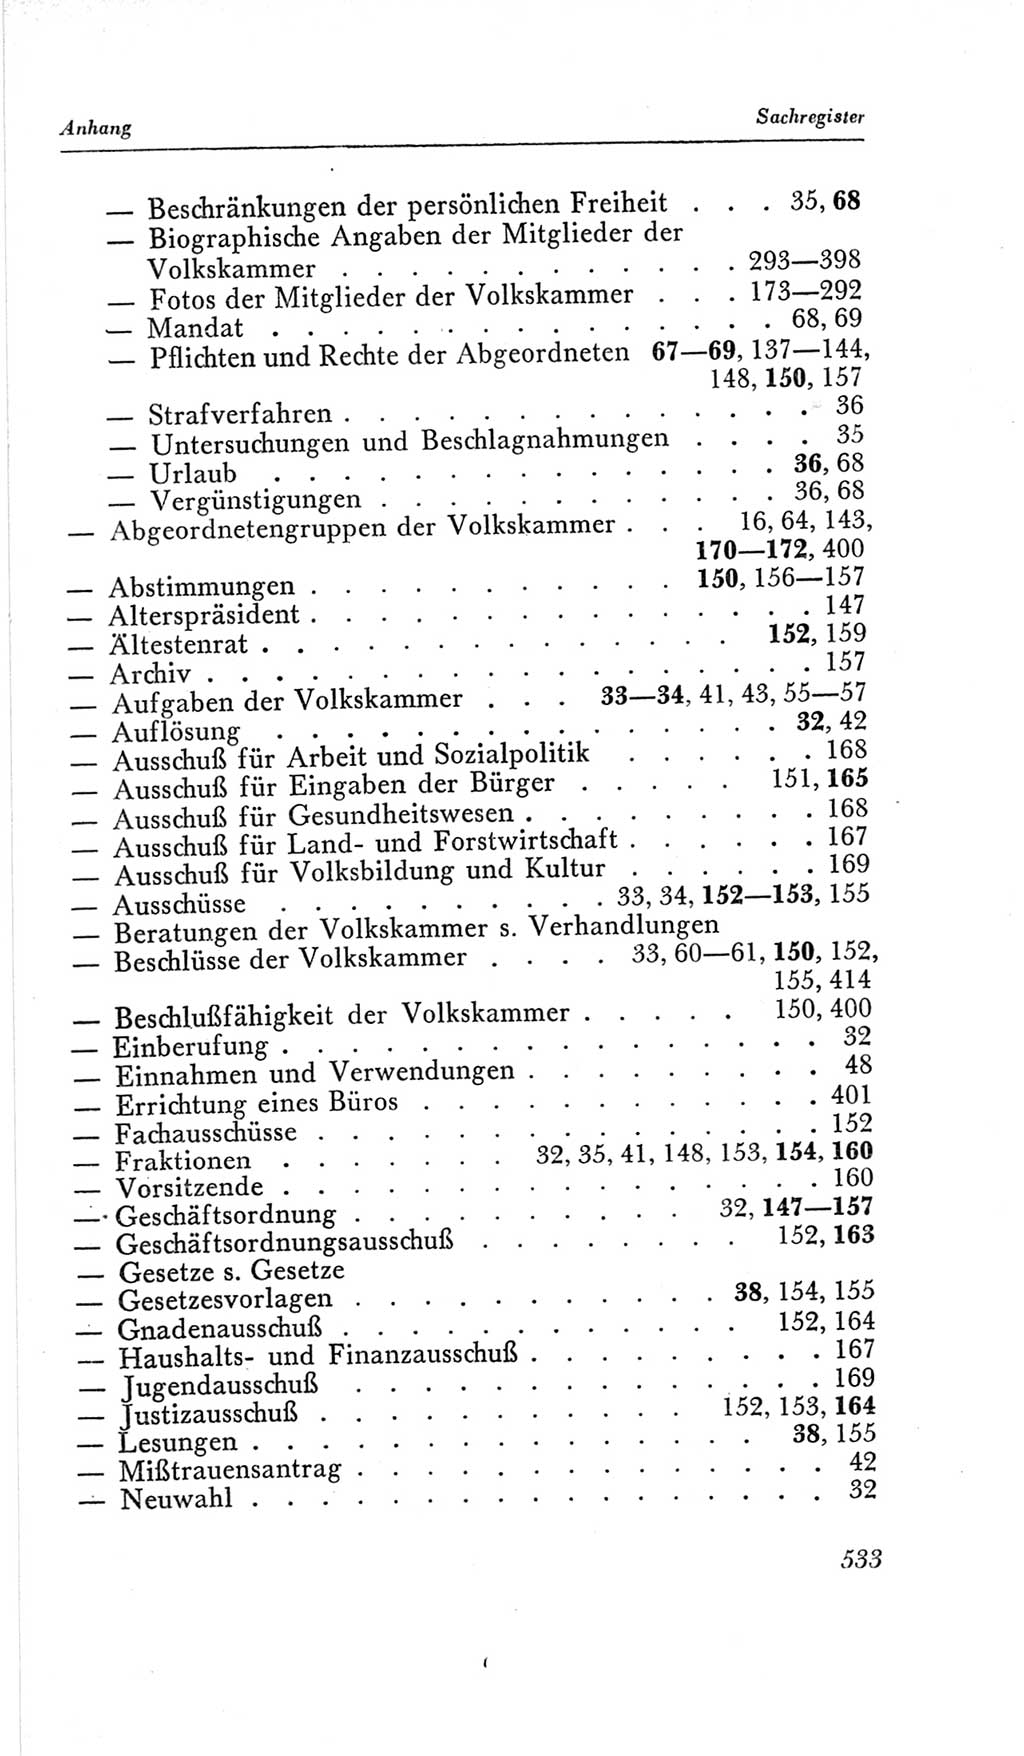 Handbuch der Volkskammer (VK) der Deutschen Demokratischen Republik (DDR), 2. Wahlperiode 1954-1958, Seite 533 (Hdb. VK. DDR, 2. WP. 1954-1958, S. 533)